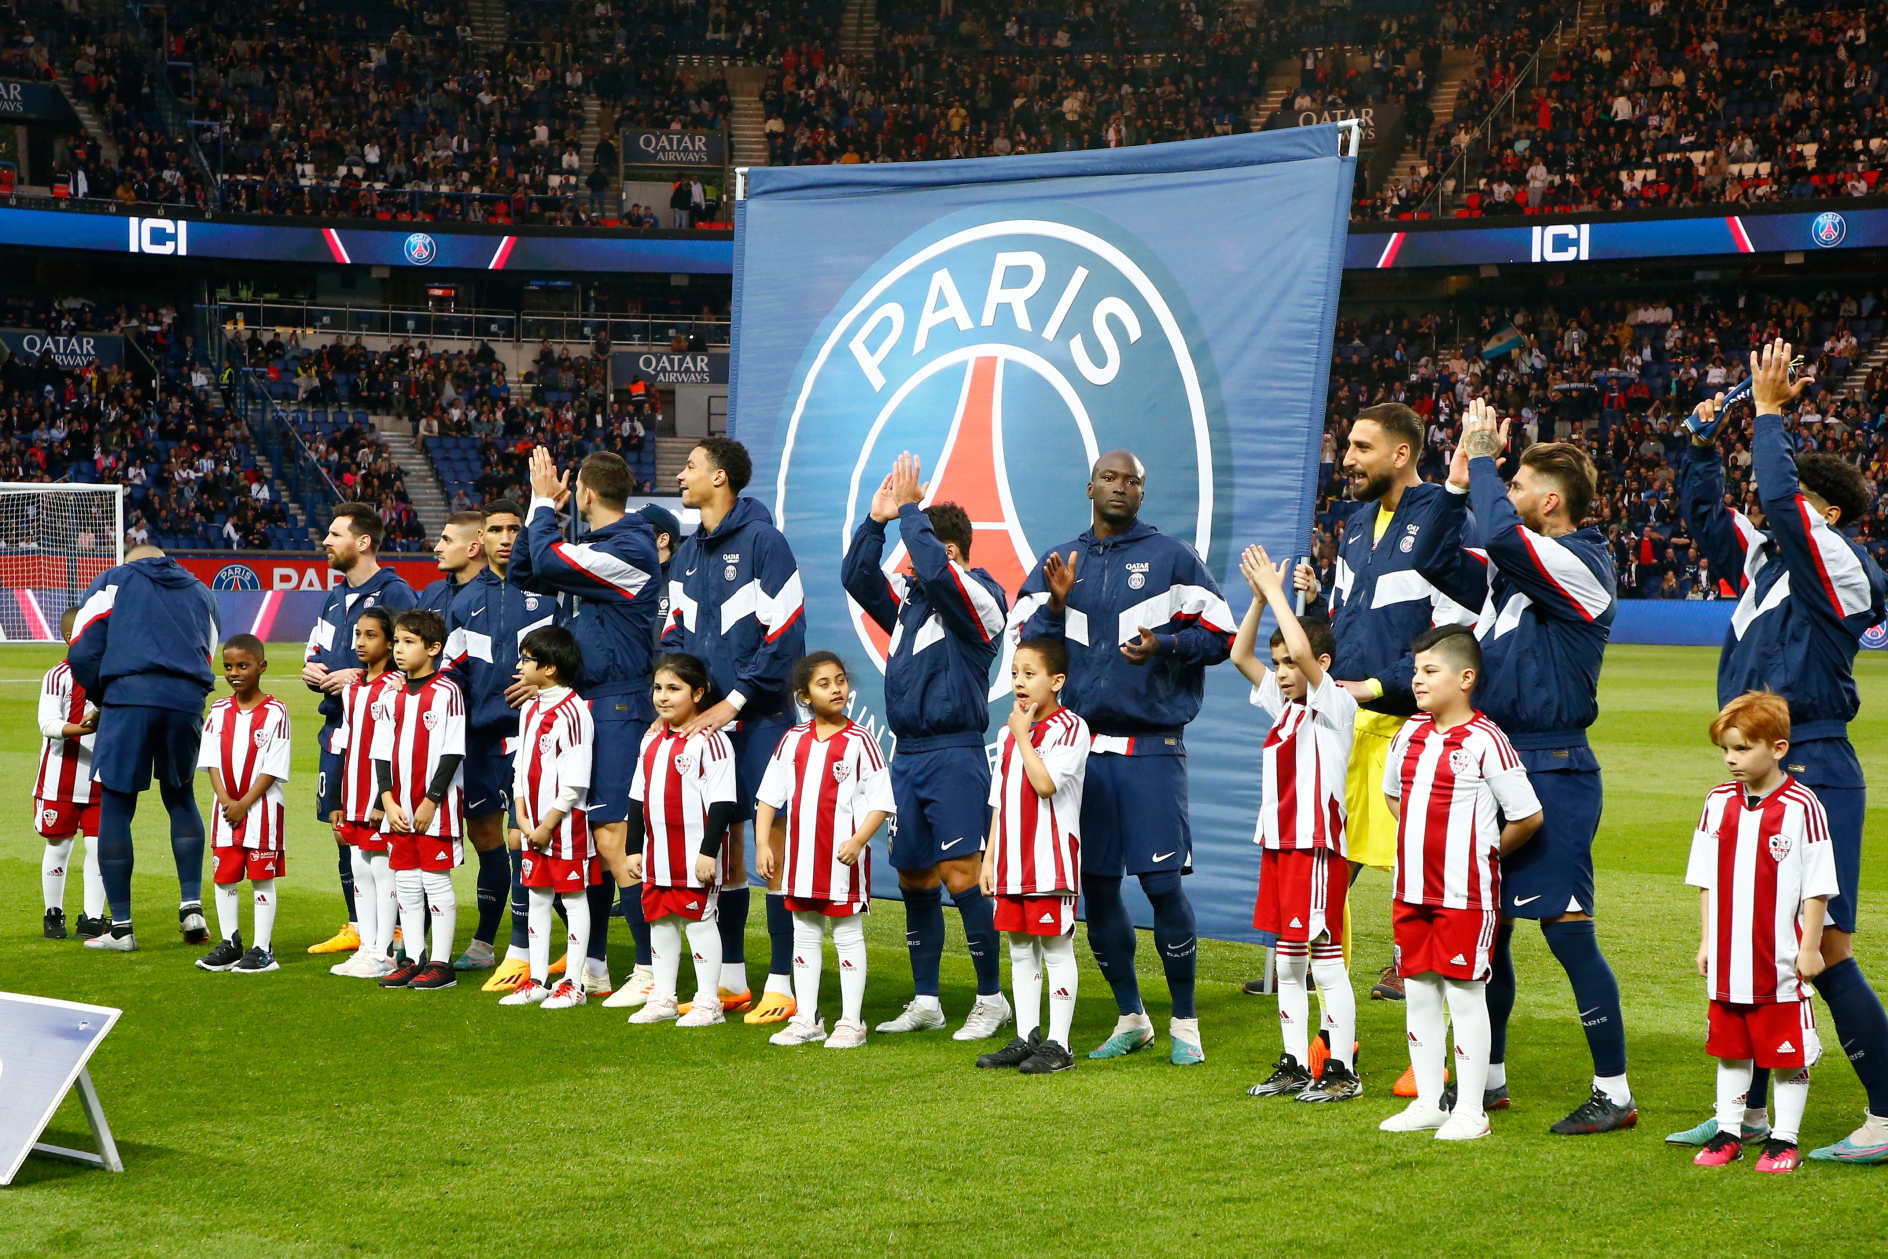 Paris Saint-Germain Football Players Make Dreams Come True at Parc des Princes